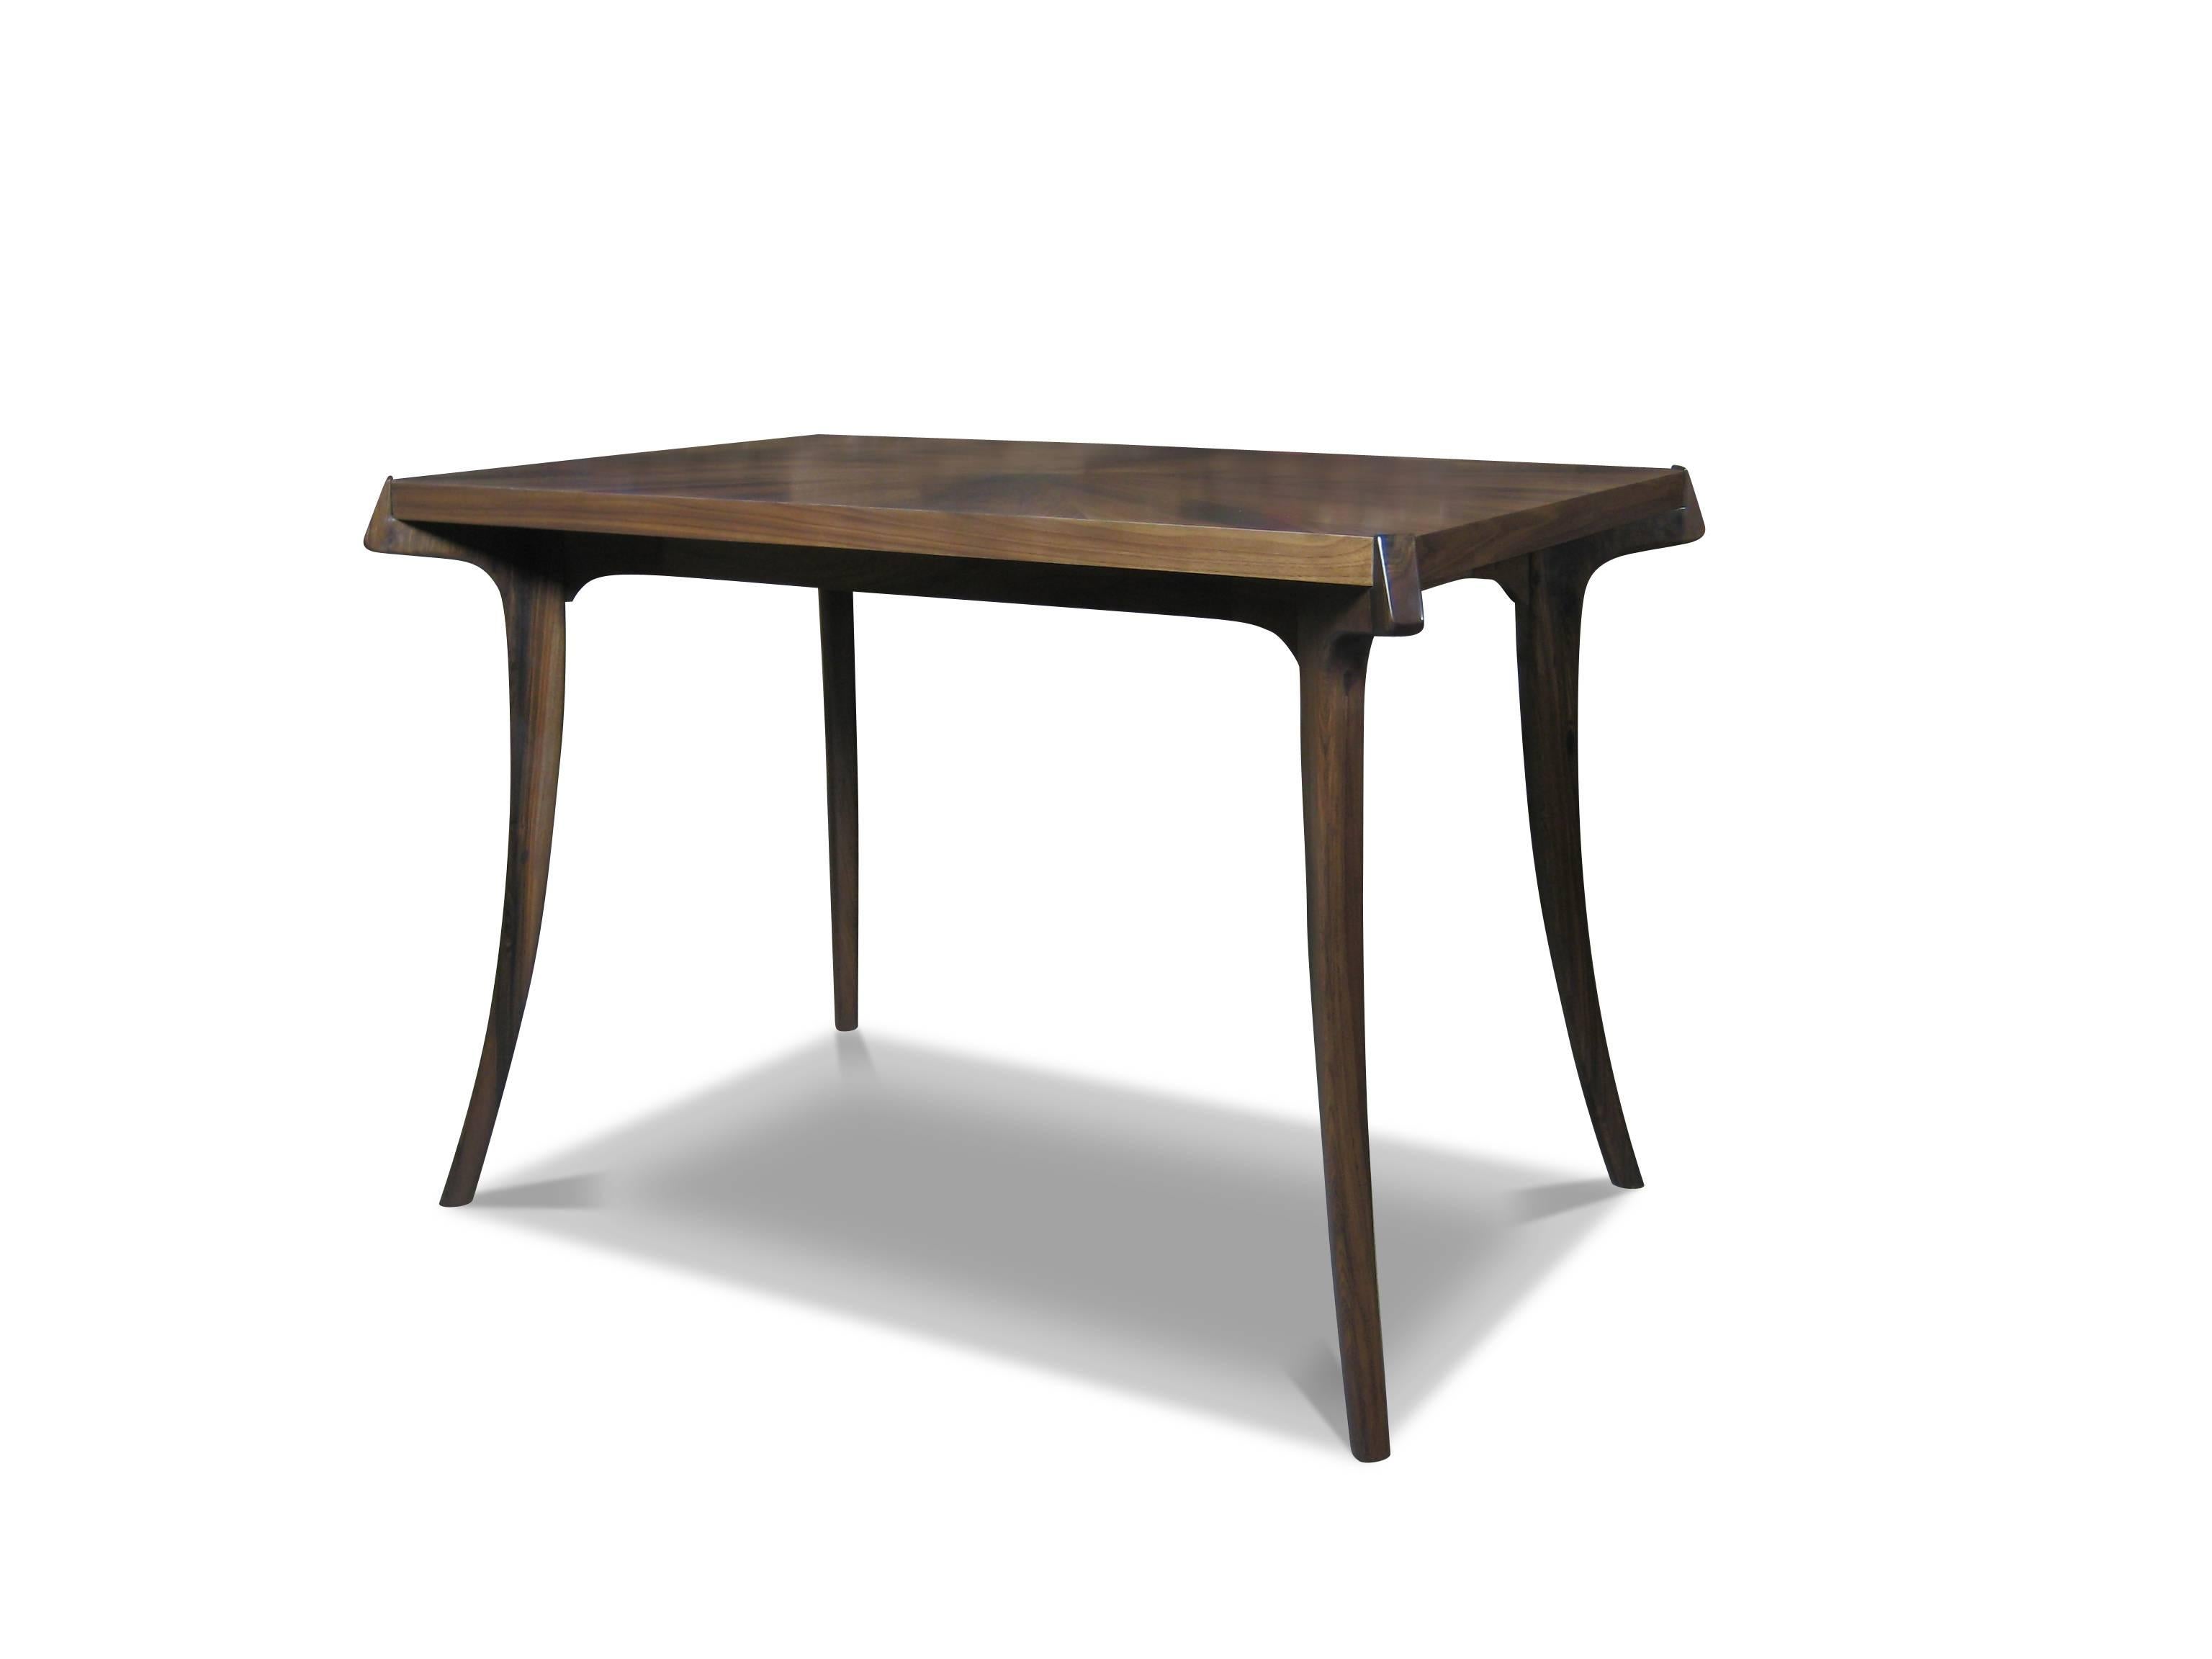 Der Uccello-Schreibtisch wird in der Werkstatt von Costantini in Buenos Aires einzeln von Hand gefertigt. Die Oberfläche des Tisches kann in jeder beliebigen Holzart, Farbe oder wirklich allem, was Sie sich vorstellen können, ausgeführt werden. Die